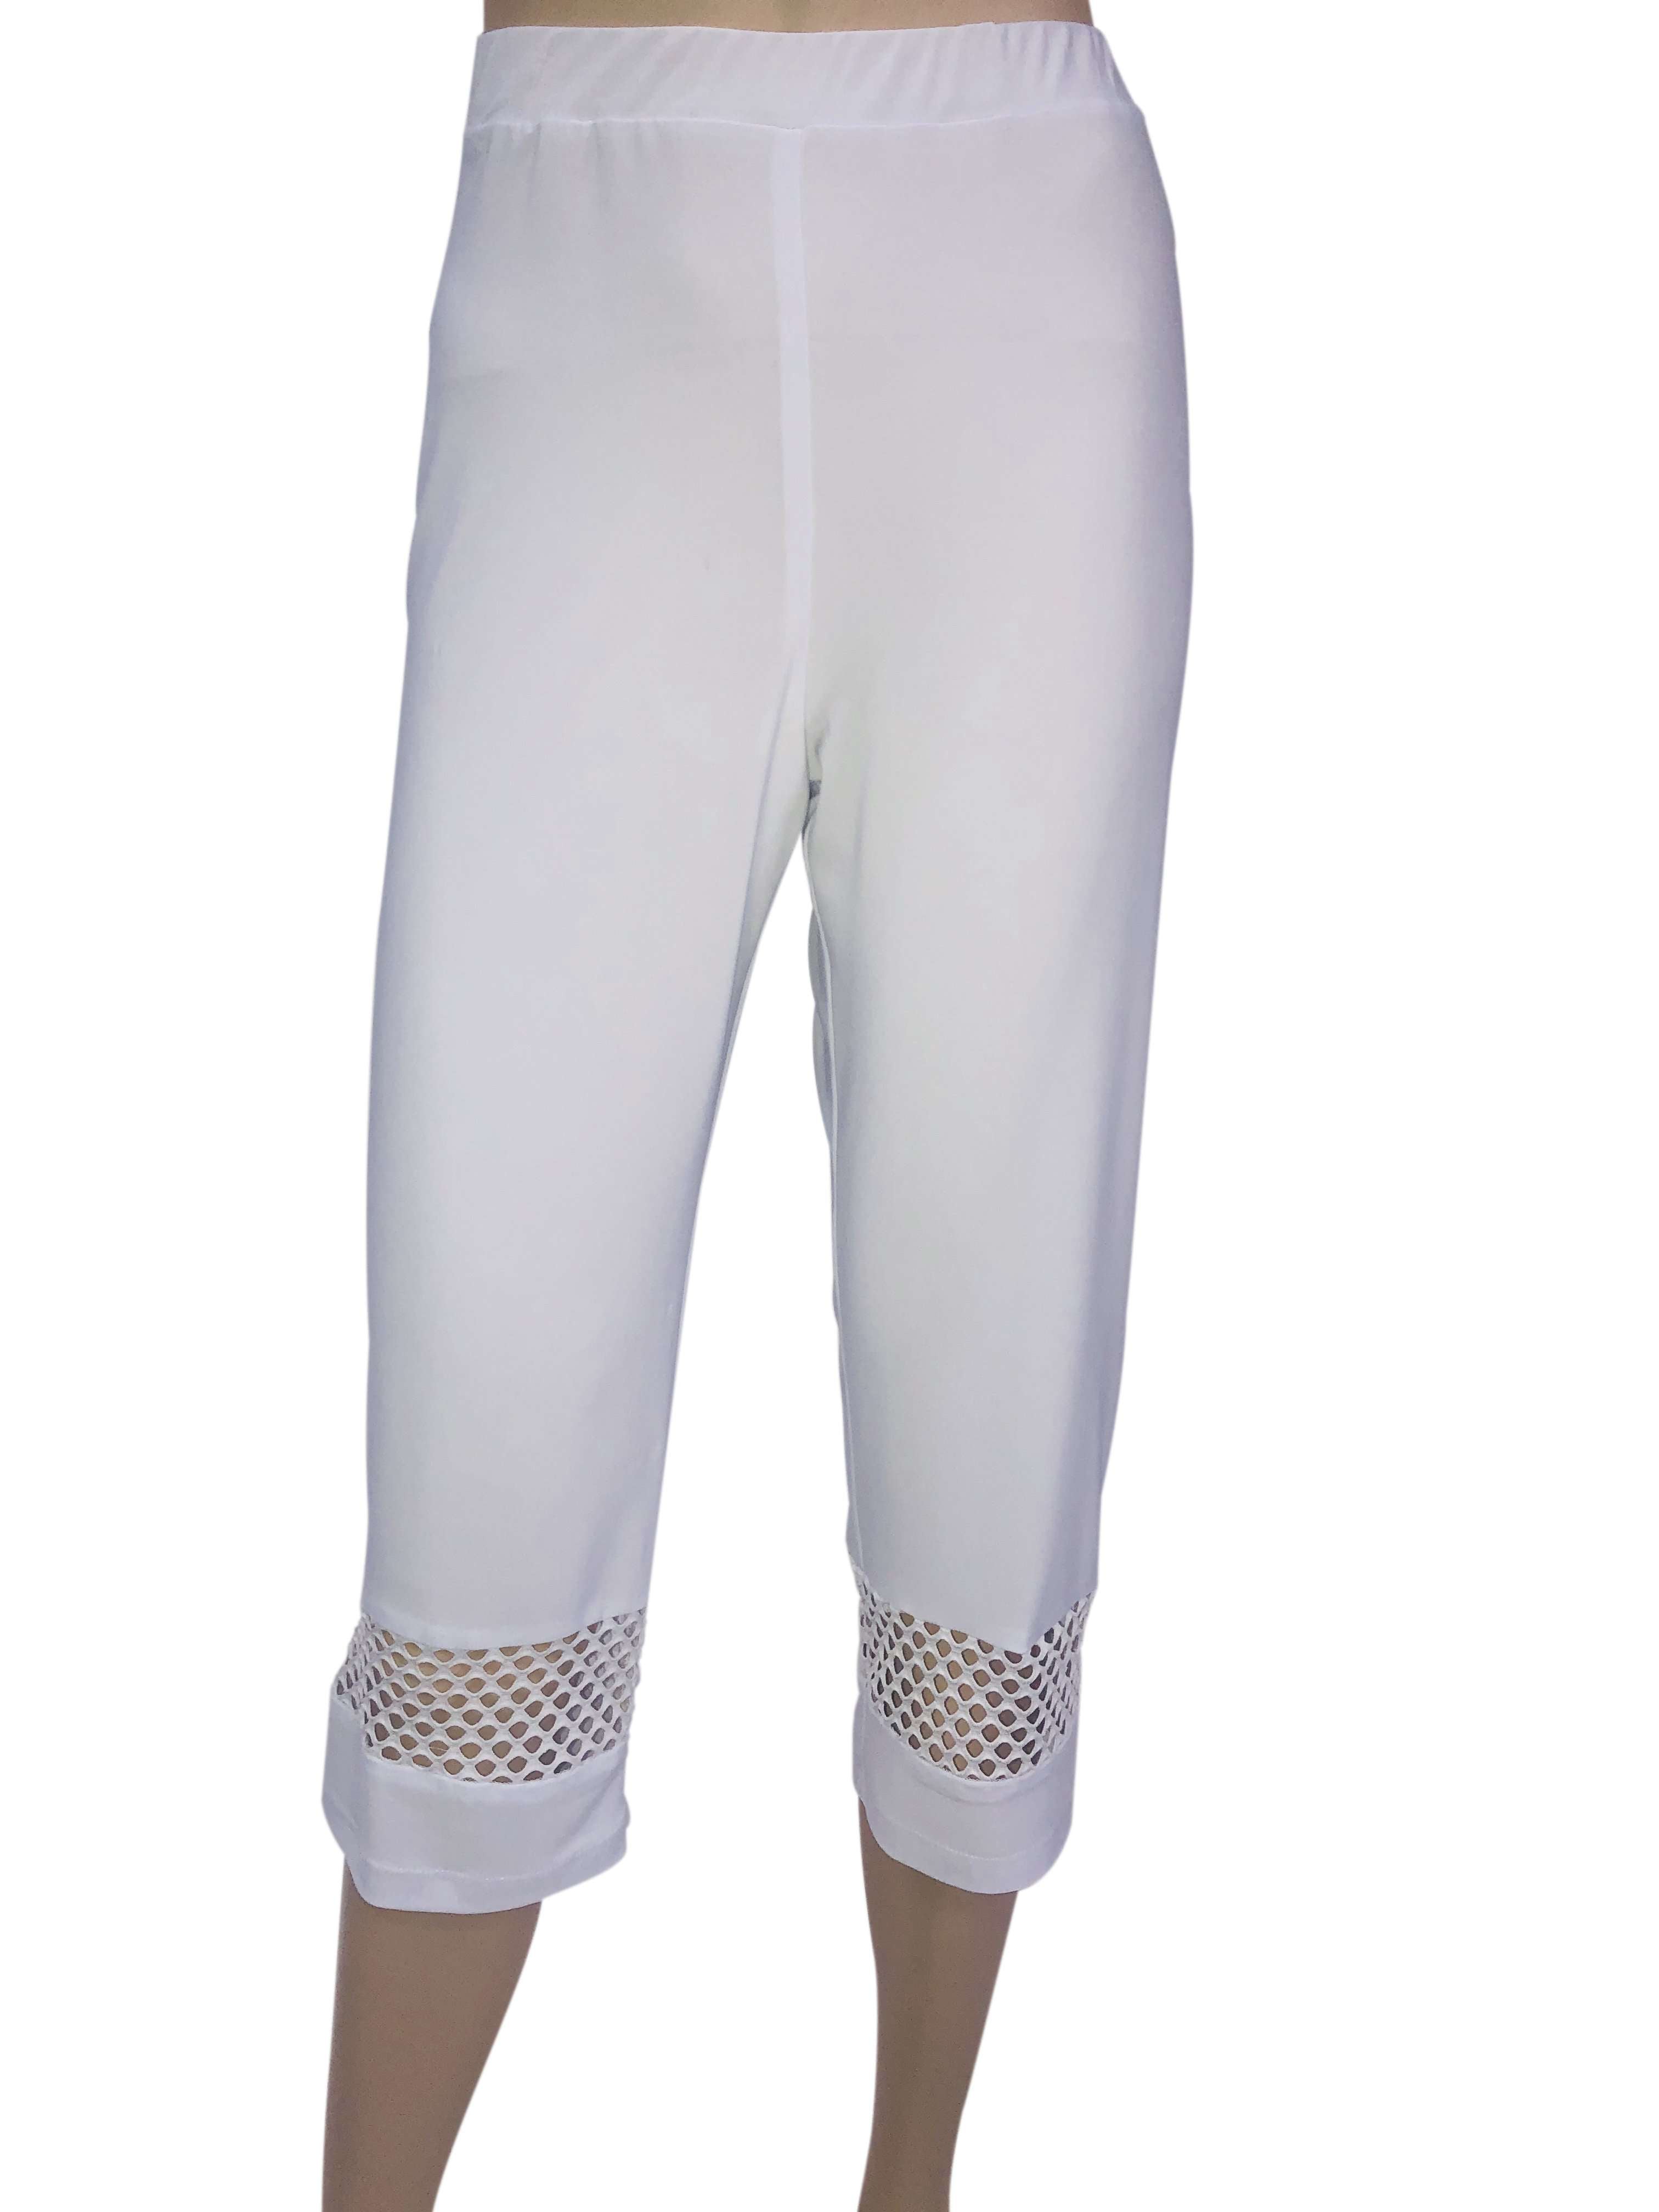 Women's White Capri Pants, XL Sizes, On Sale